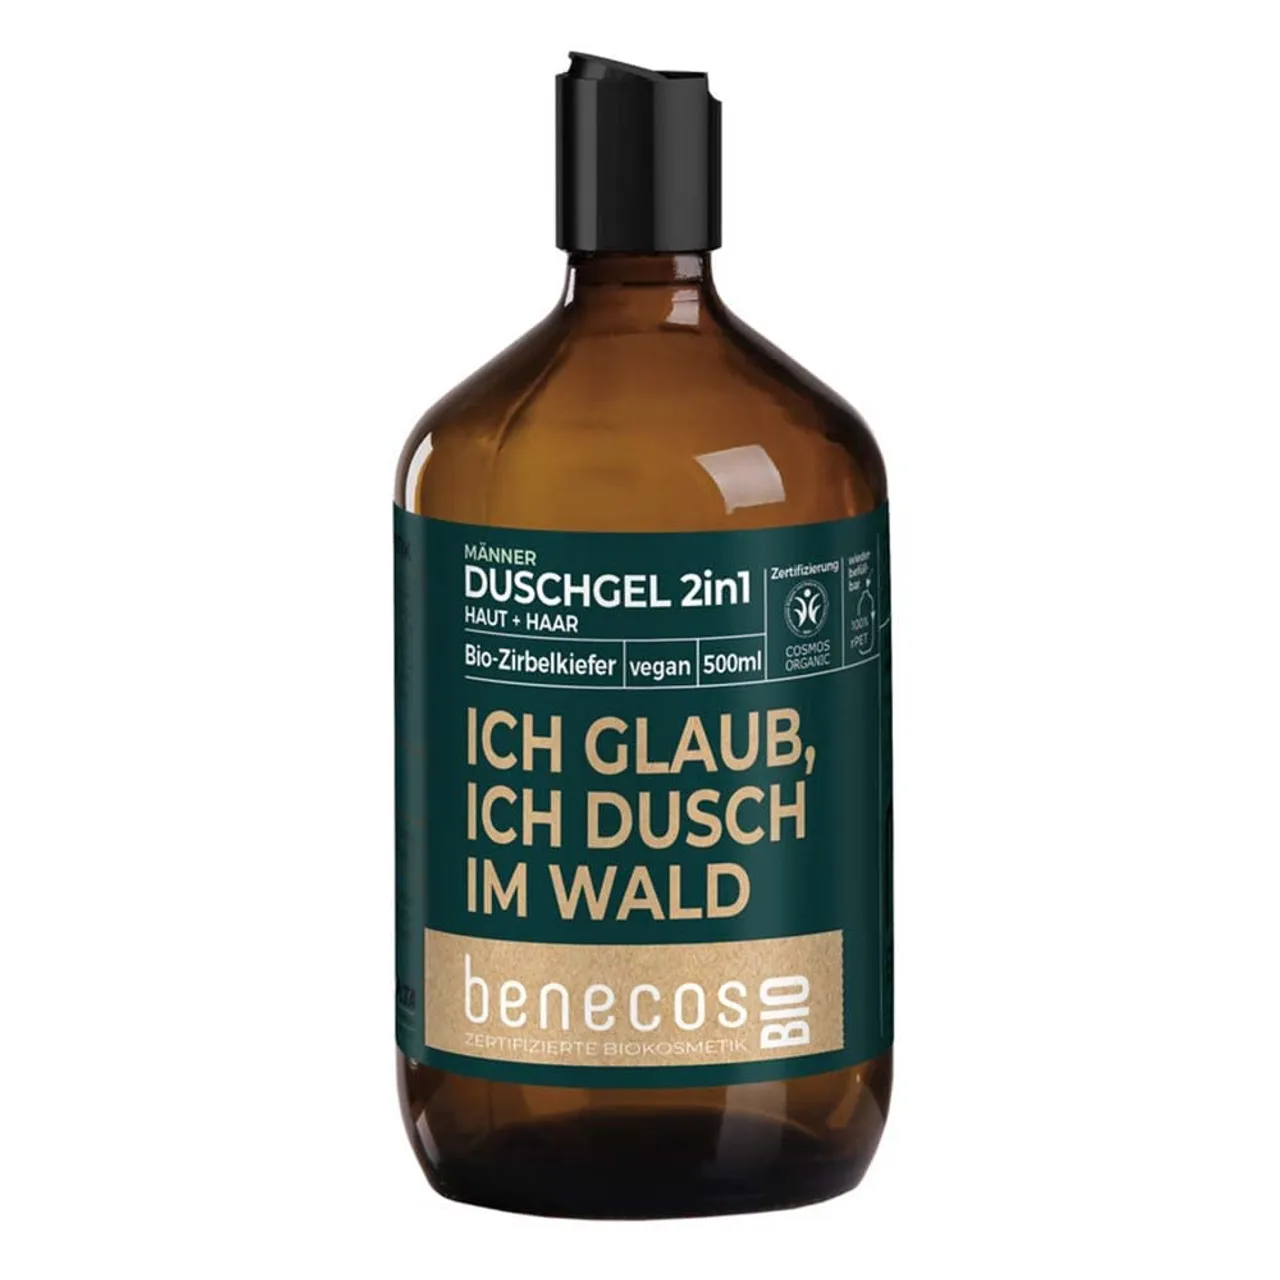 benecos - natural beauty BIO Duschgel 2in1 (Körper und